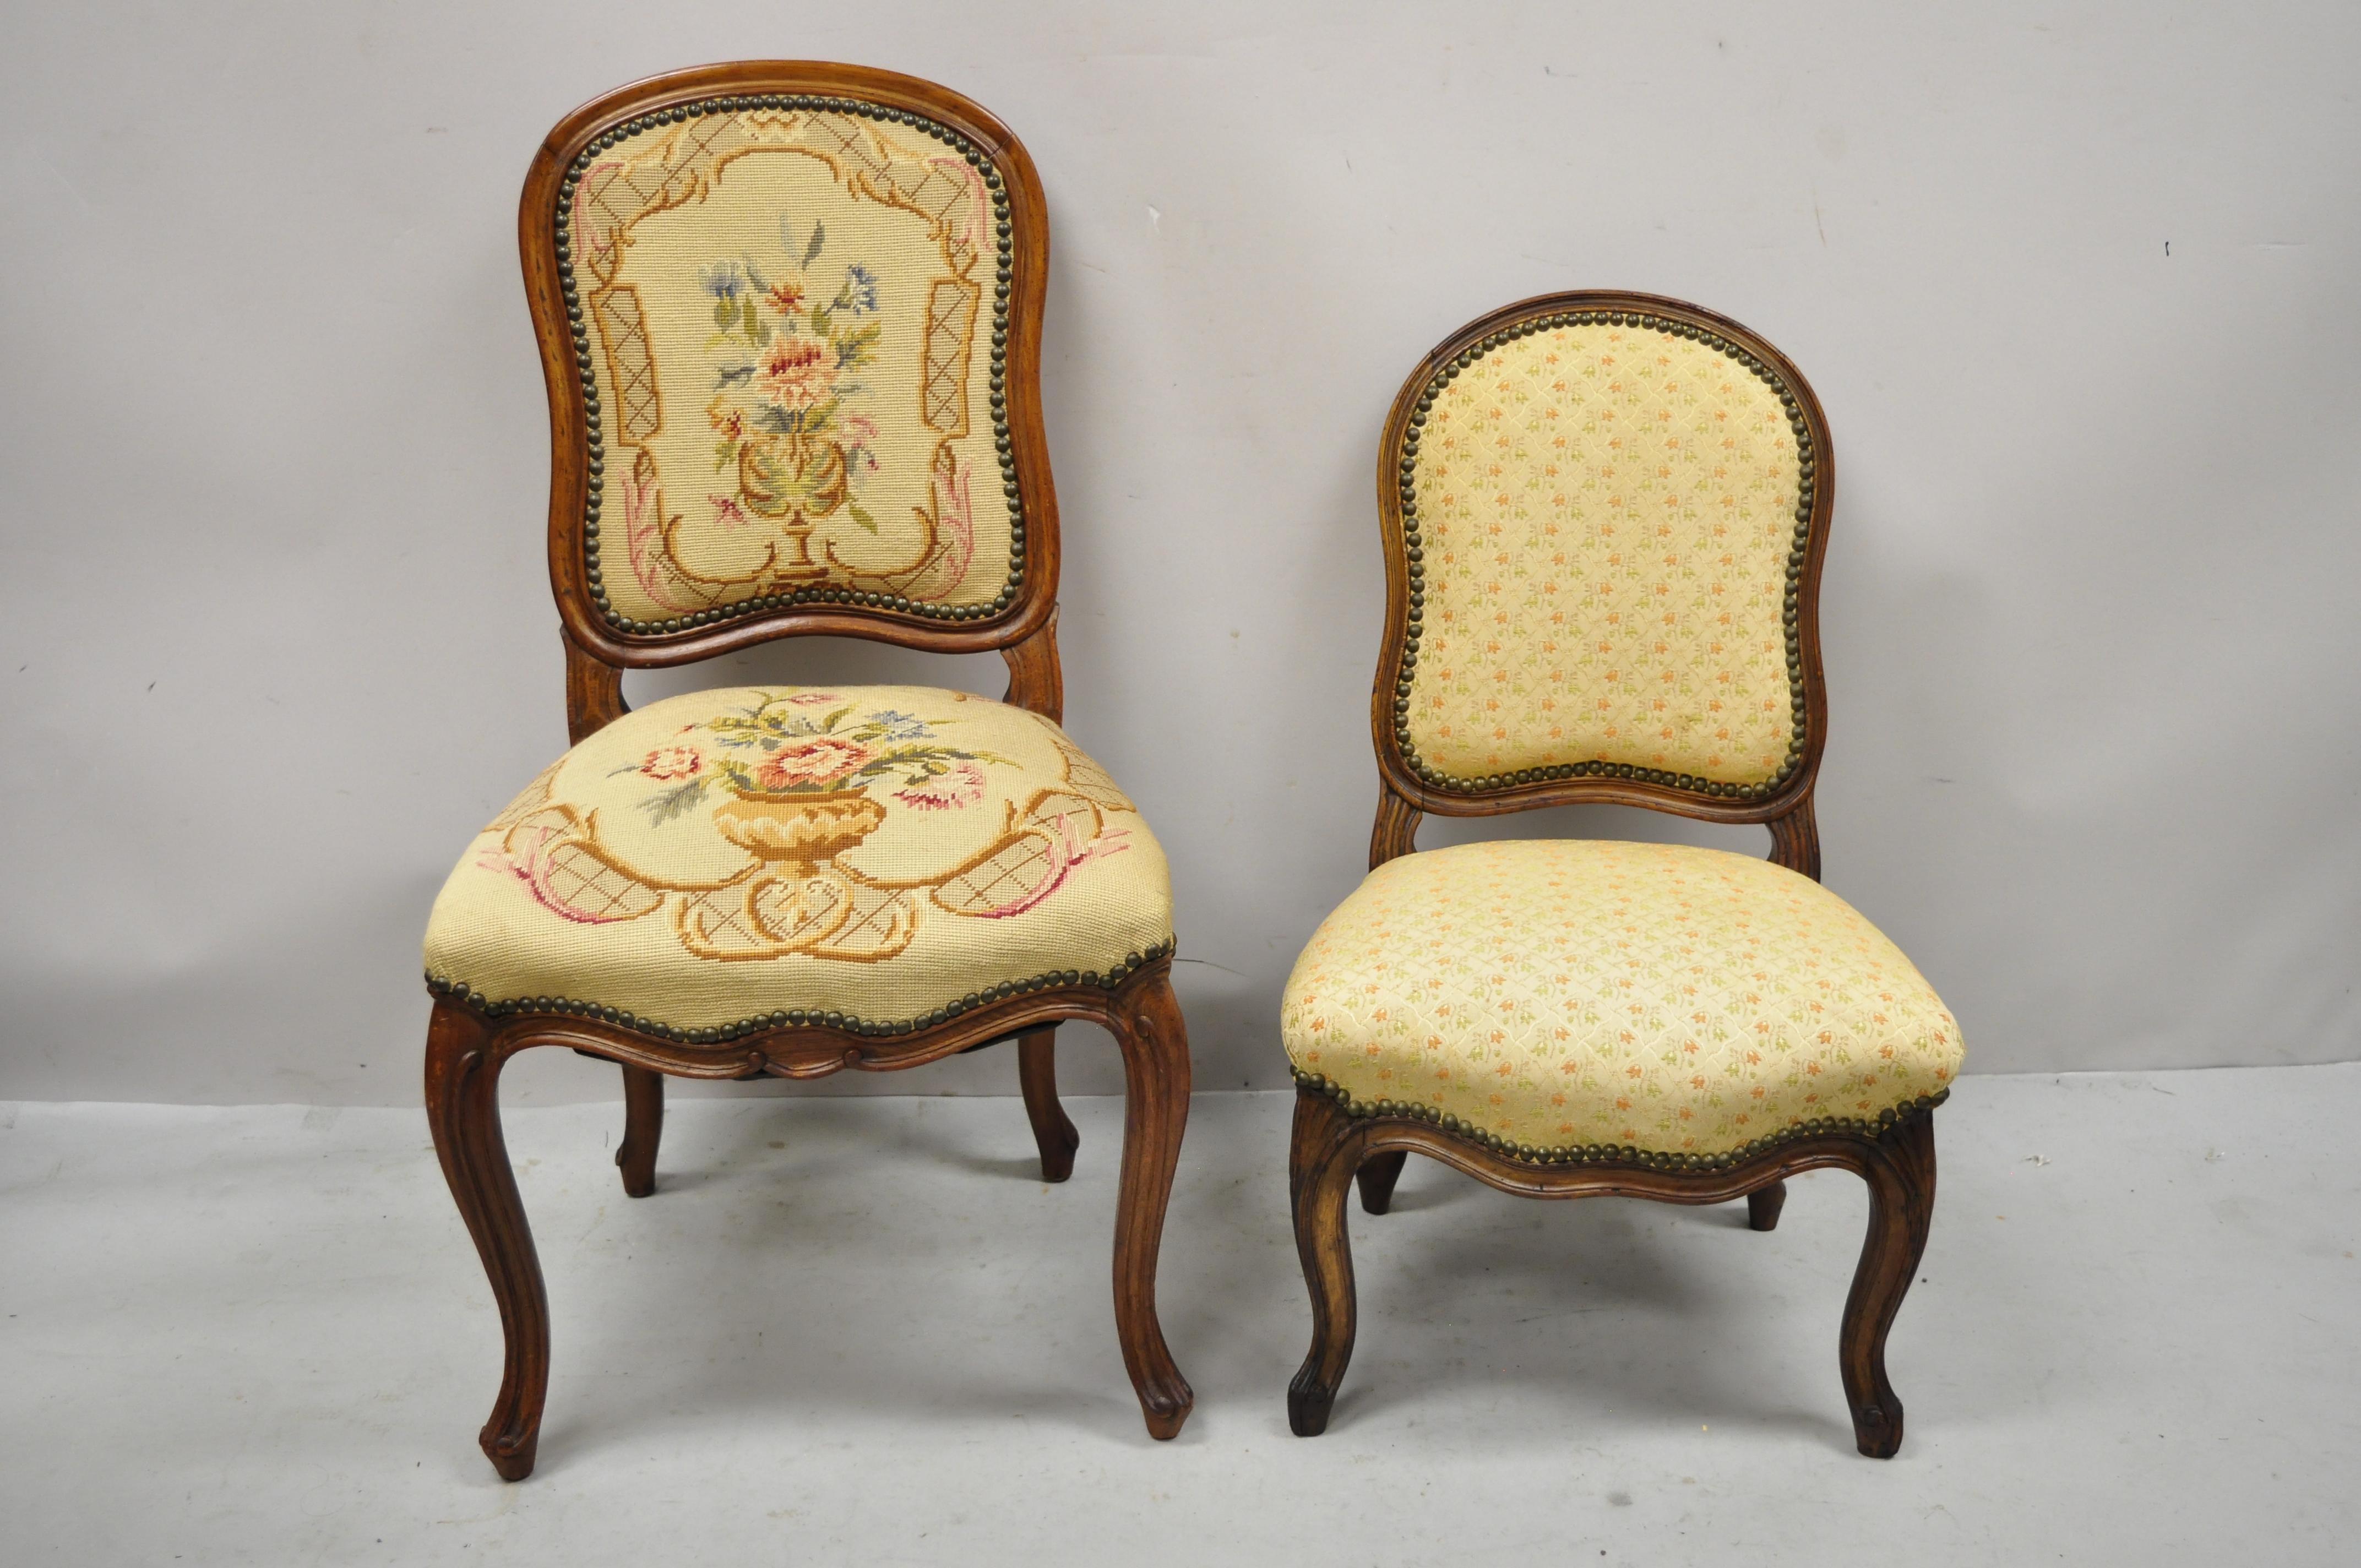 Kleiner antiker Boudoir-Sessel aus geschnitztem Walnussholz im Louis XV-Stil. Artikel verfügt über kleine Boudoir Größe Stuhl, Massivholzrahmen, schöne Holzmaserung, schön geschnitzte Details, Cabriole Beine, sehr schöne antike Element, Qualität